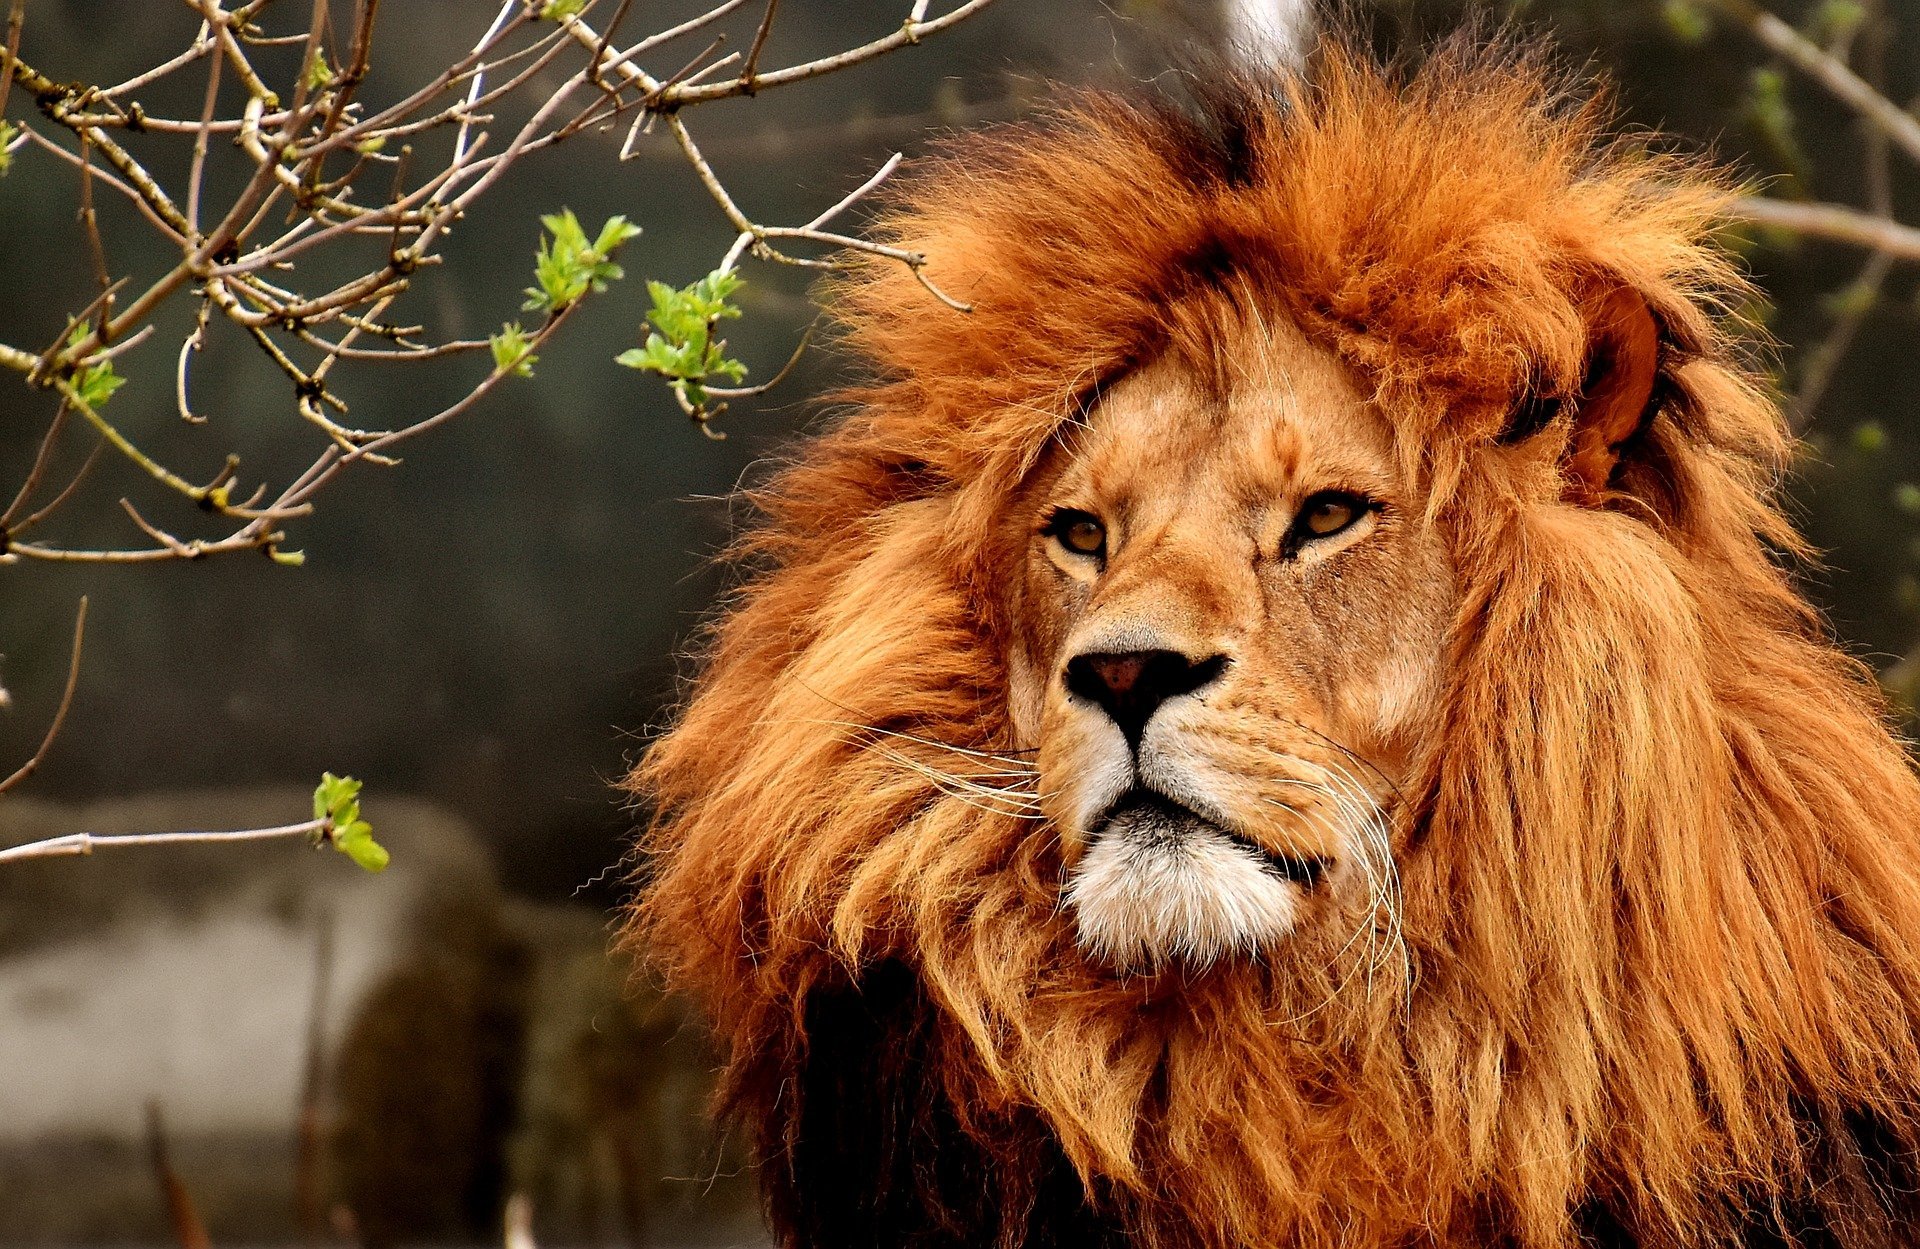 quiz z hiszpańskiego zwierzęta animales numeros test wiedzy łatwy lew león